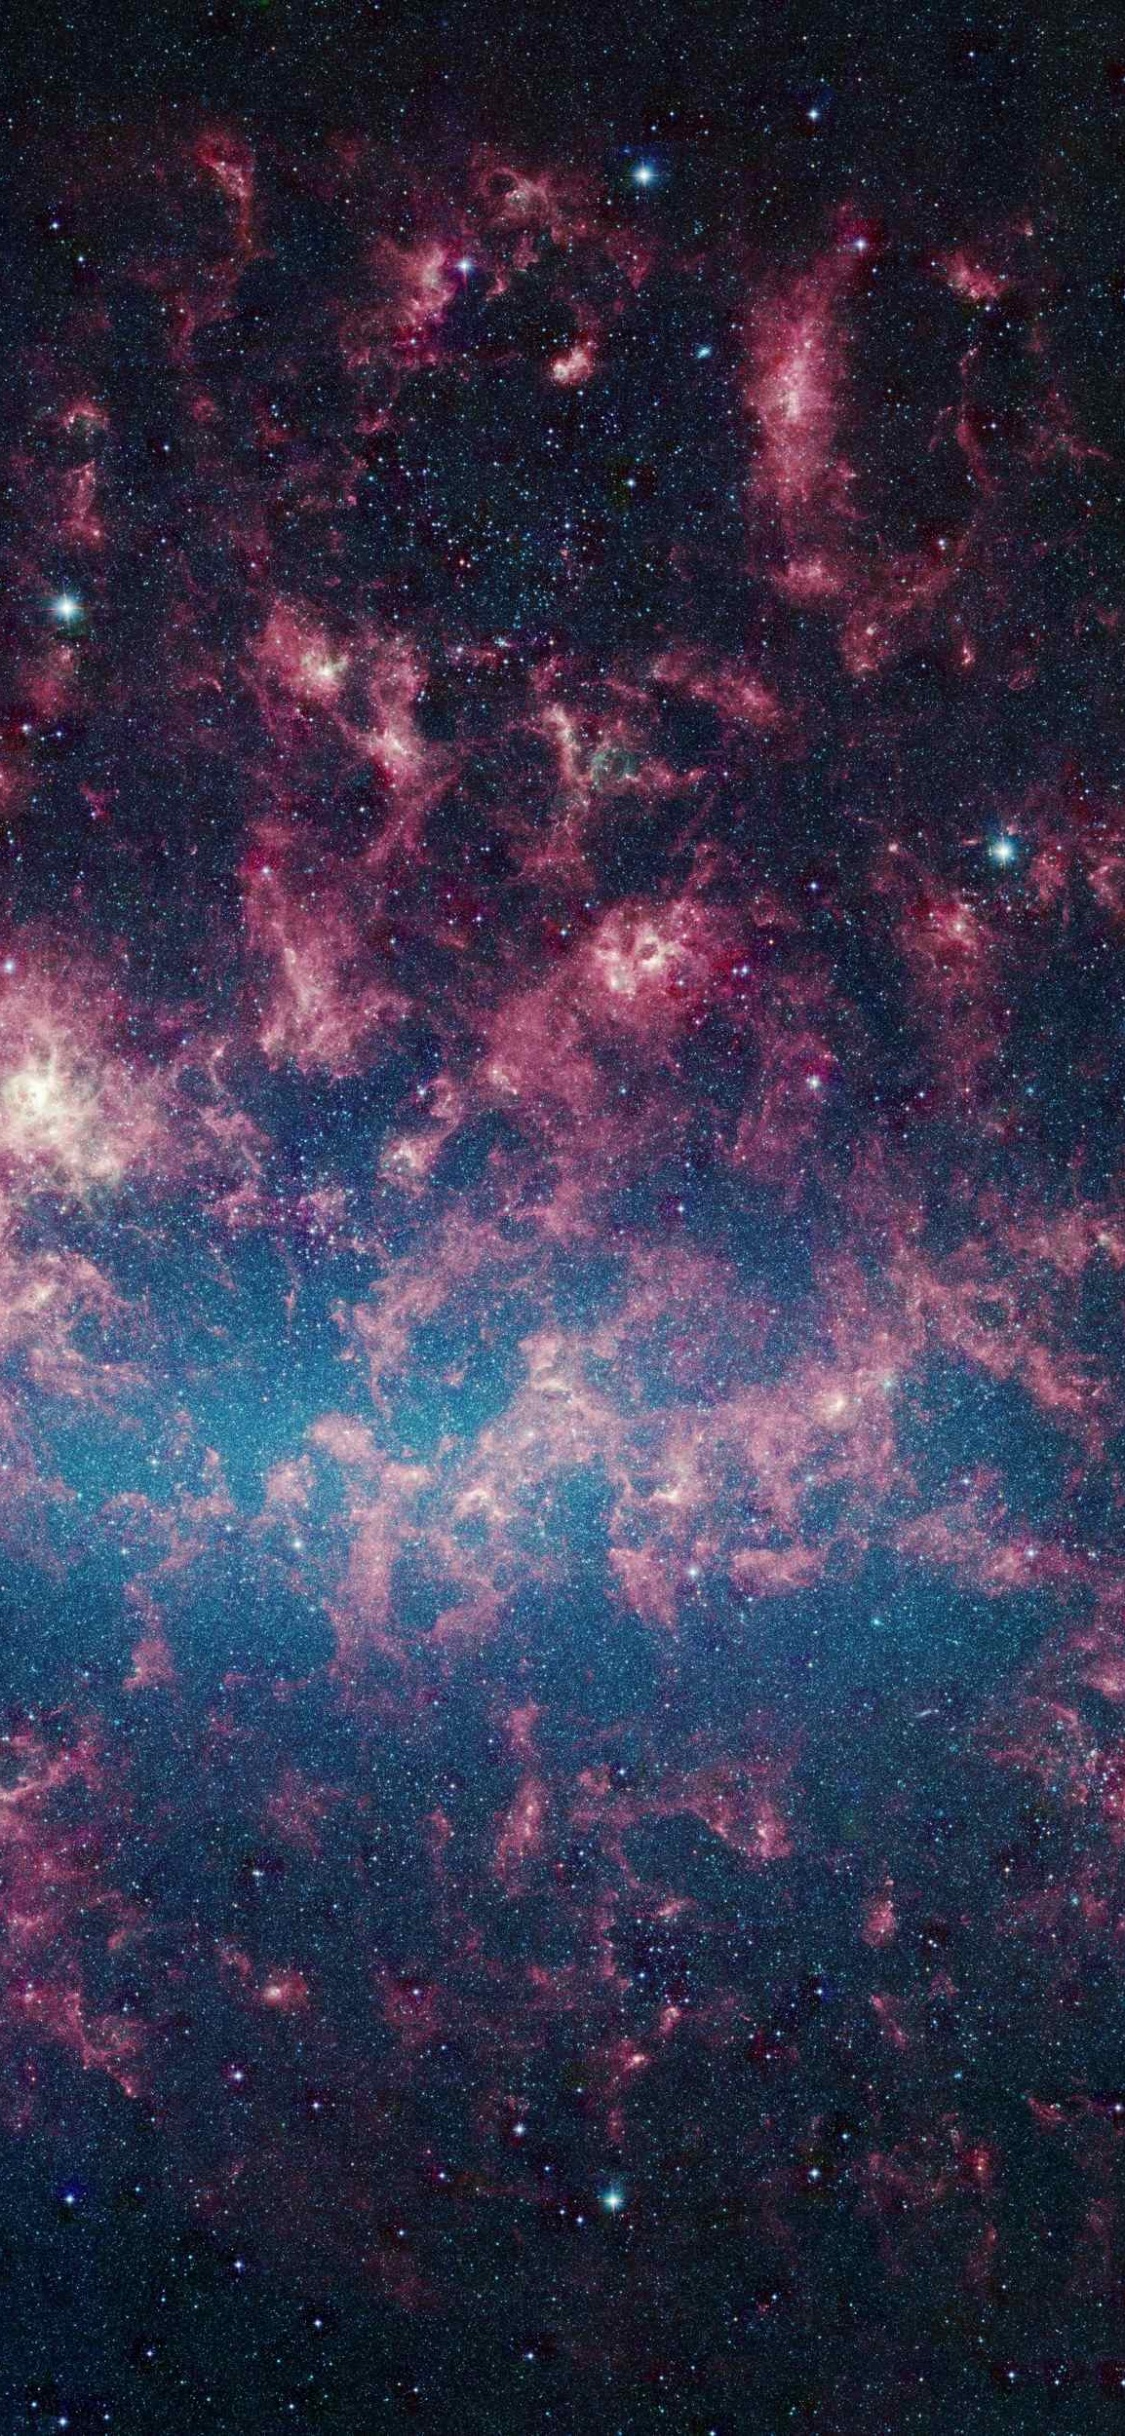 大麦哲伦星云, 银河系, 斯皮策太空望远镜, 麦哲伦星云, 天文学对象 壁纸 1125x2436 允许